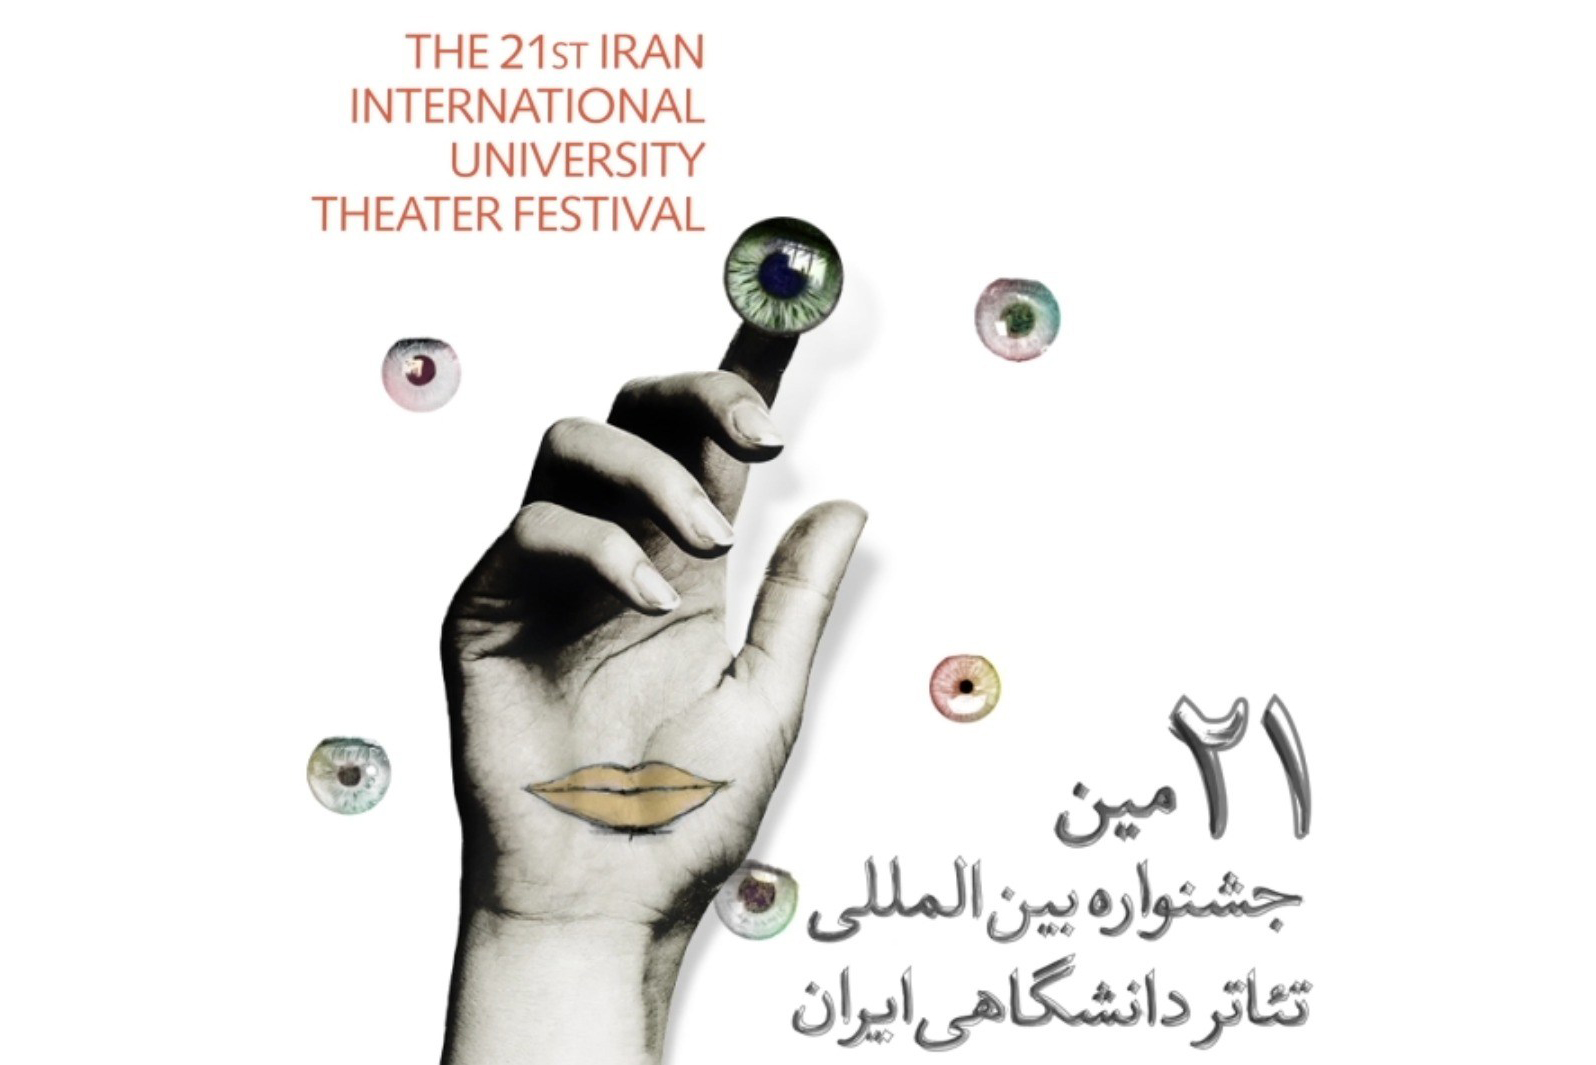 در آخرین روز از برگزاری جشنواره بیست و یکم

نامزدهای جشنواره تئاتر دانشگاهی ایران معرفی شدند